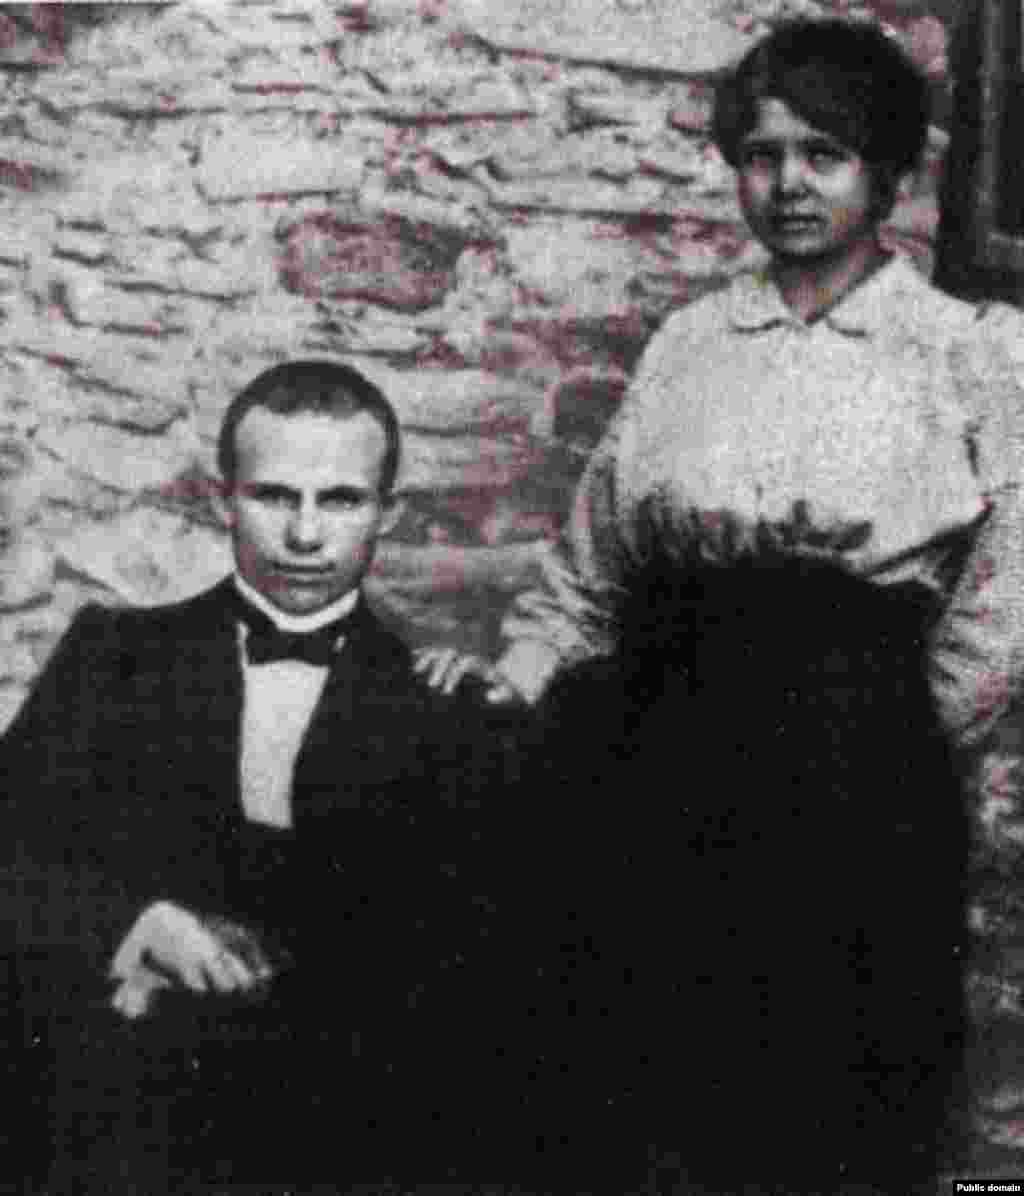 نیکیتا خروشچف و همسر اولش یوفرازیانا در سال ۱۹۱۶. یوفرازیانا بعداً از تیفوس درگذشت. نیکیتا با ارتقا درجه در حزب کمونیست به رهبری اتحاد شوروی رسید.